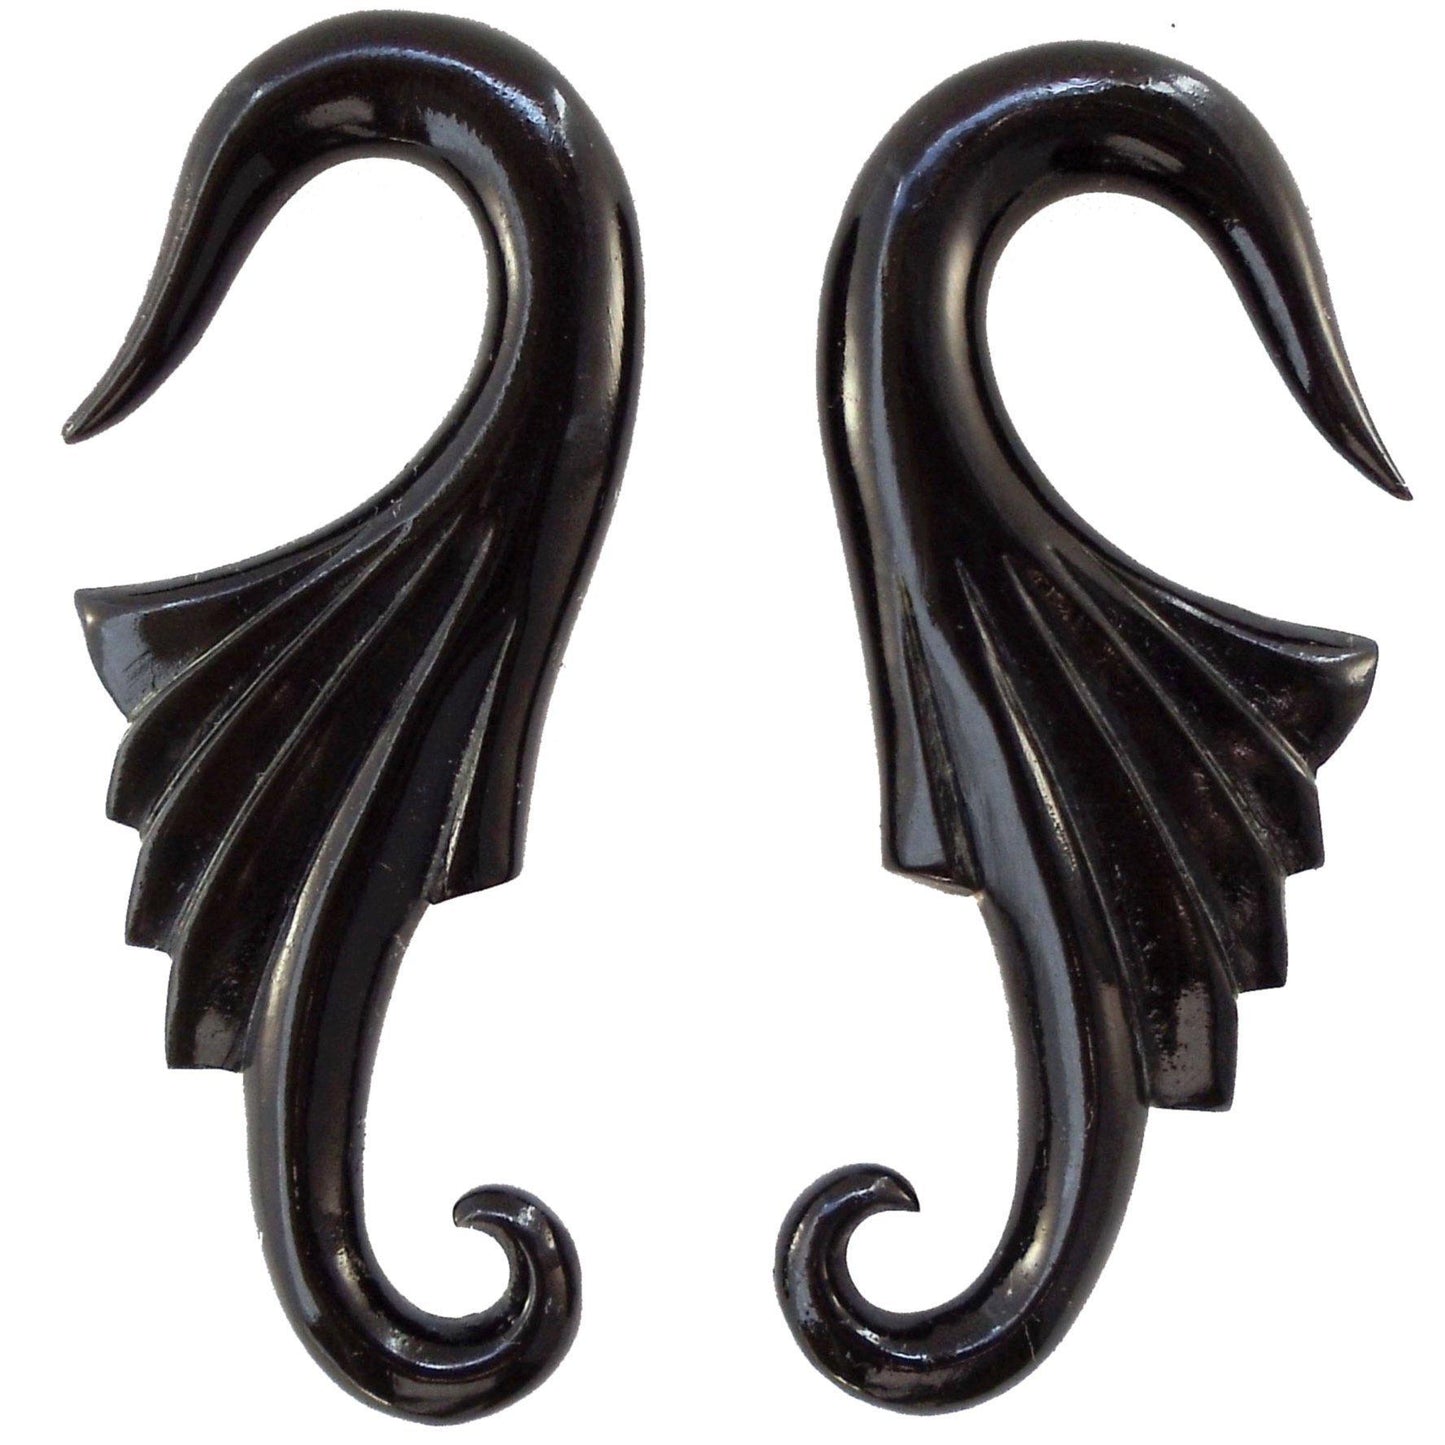 Gauge Earrings :|: Wings. Horn 2g gauge earrings.